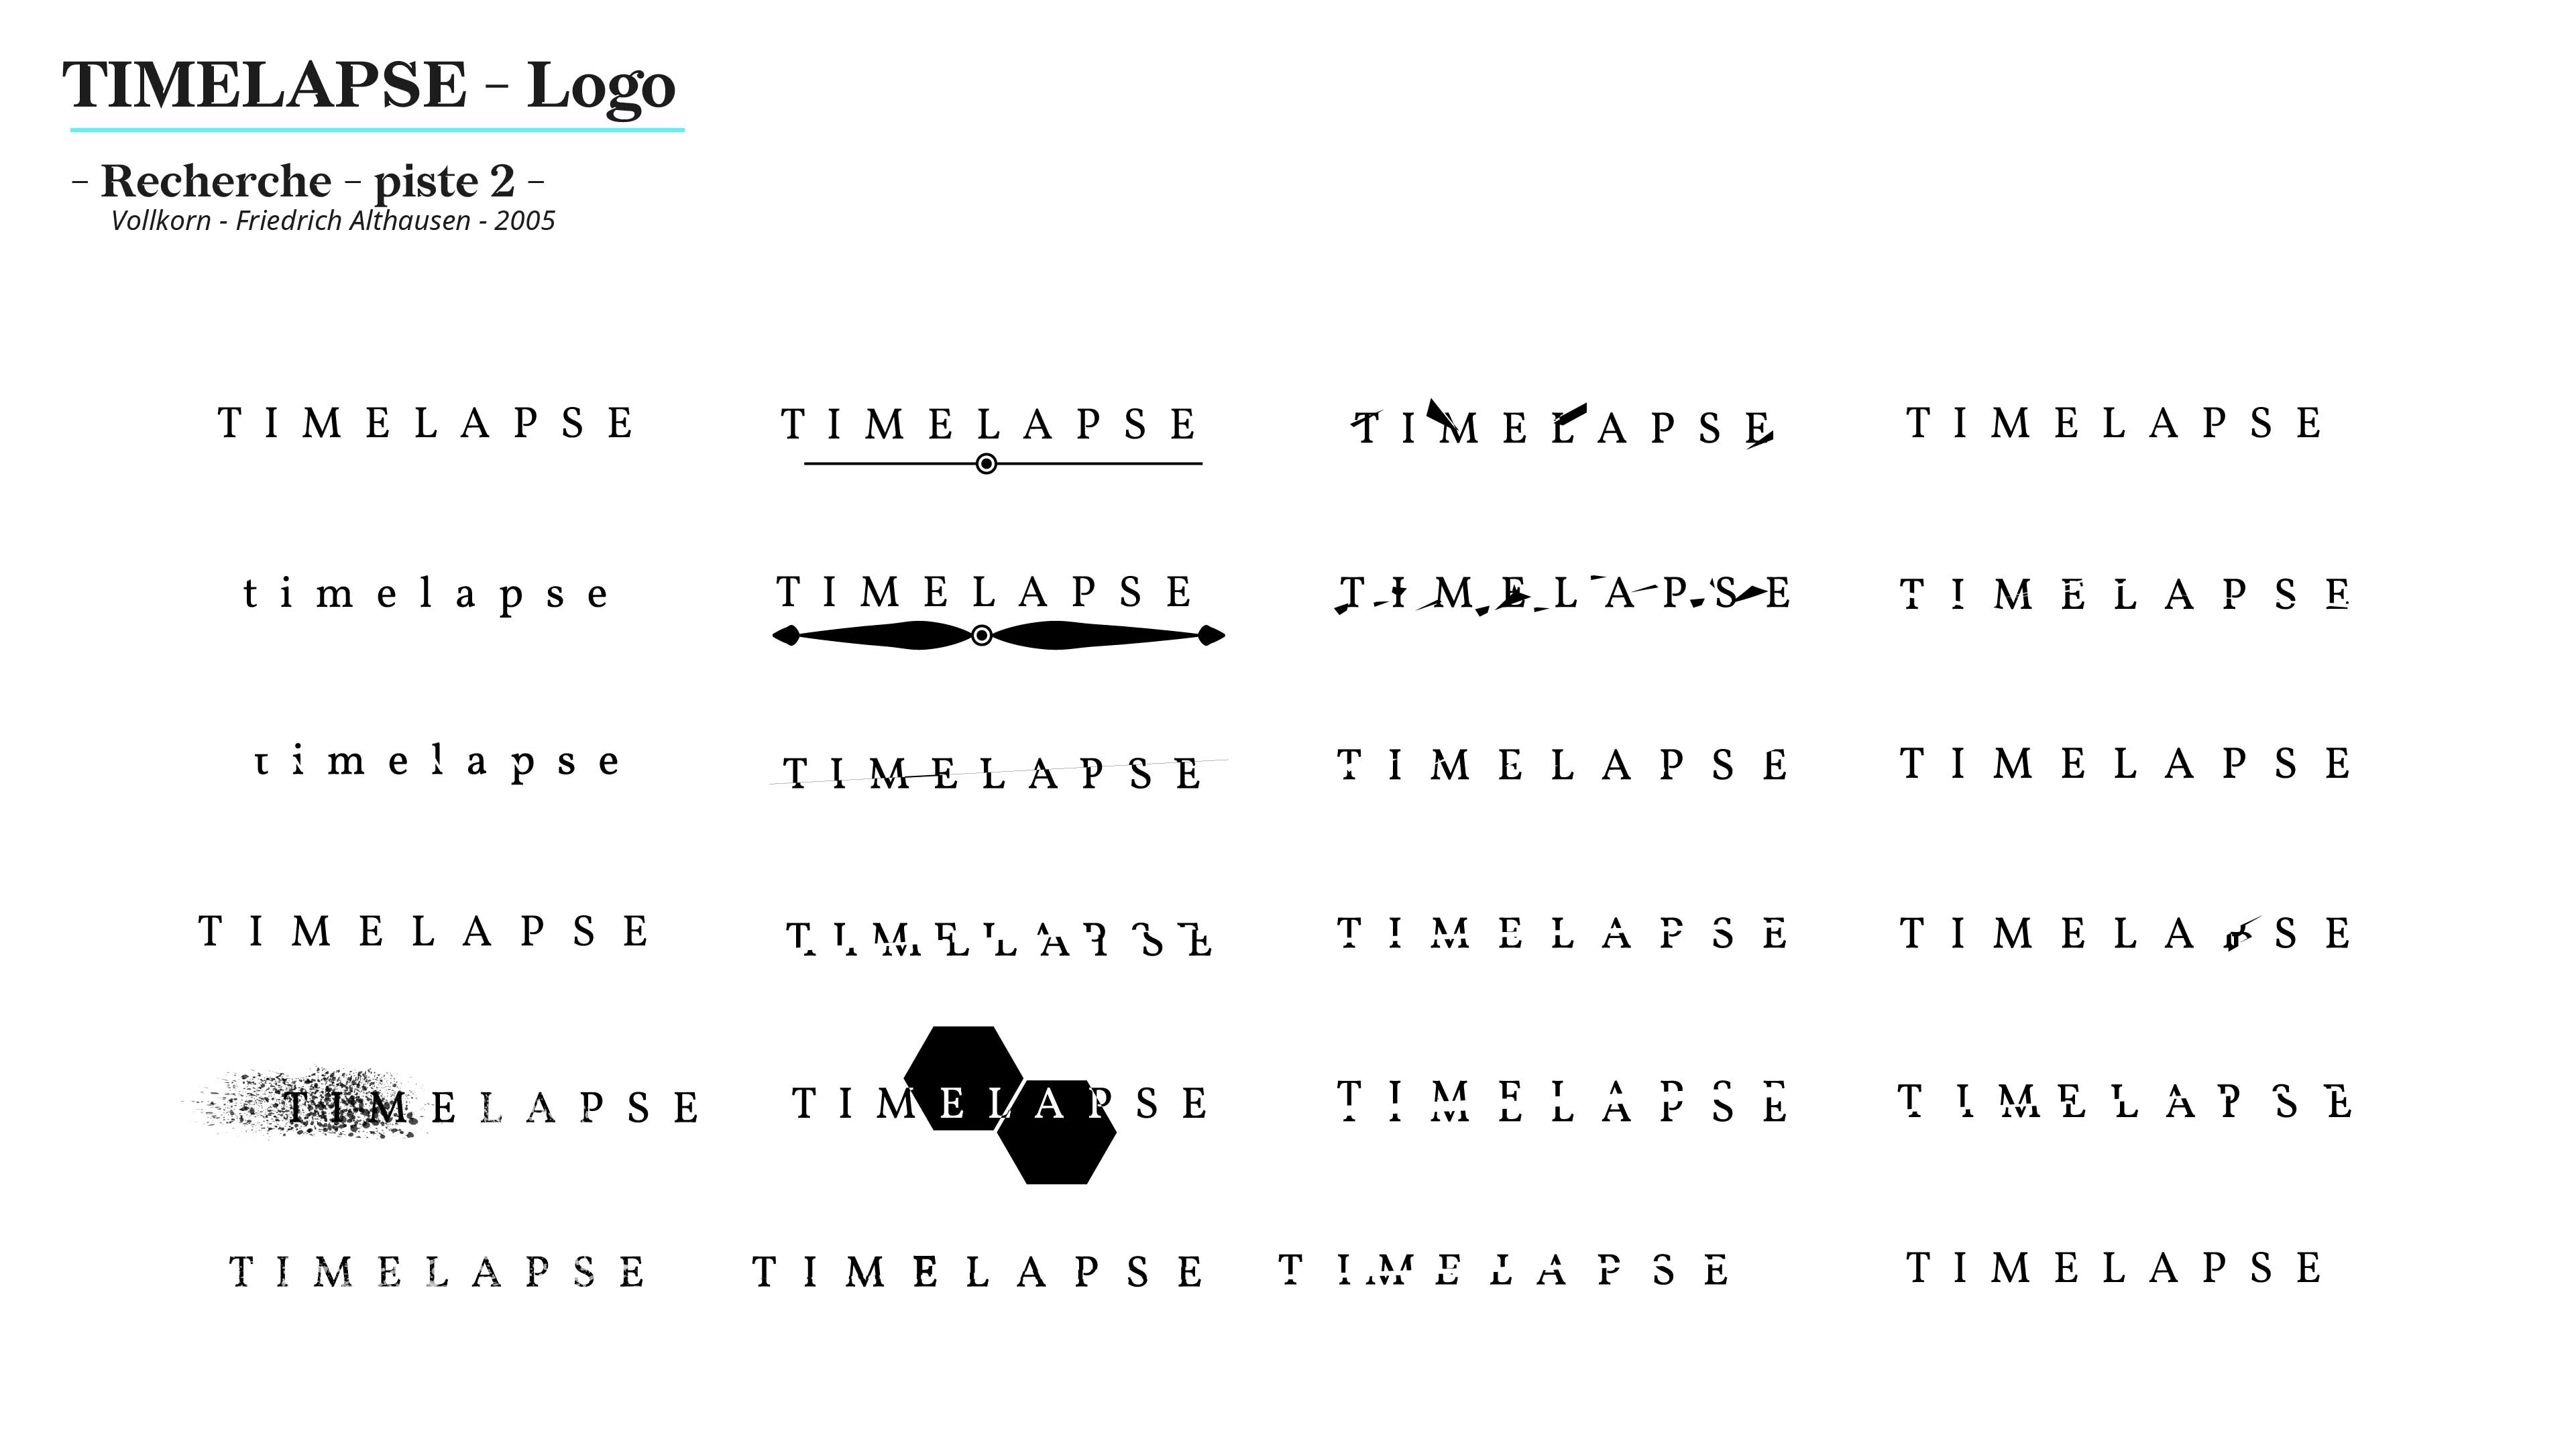 Plusieurs tentatives de logo avec le mot Timelapse